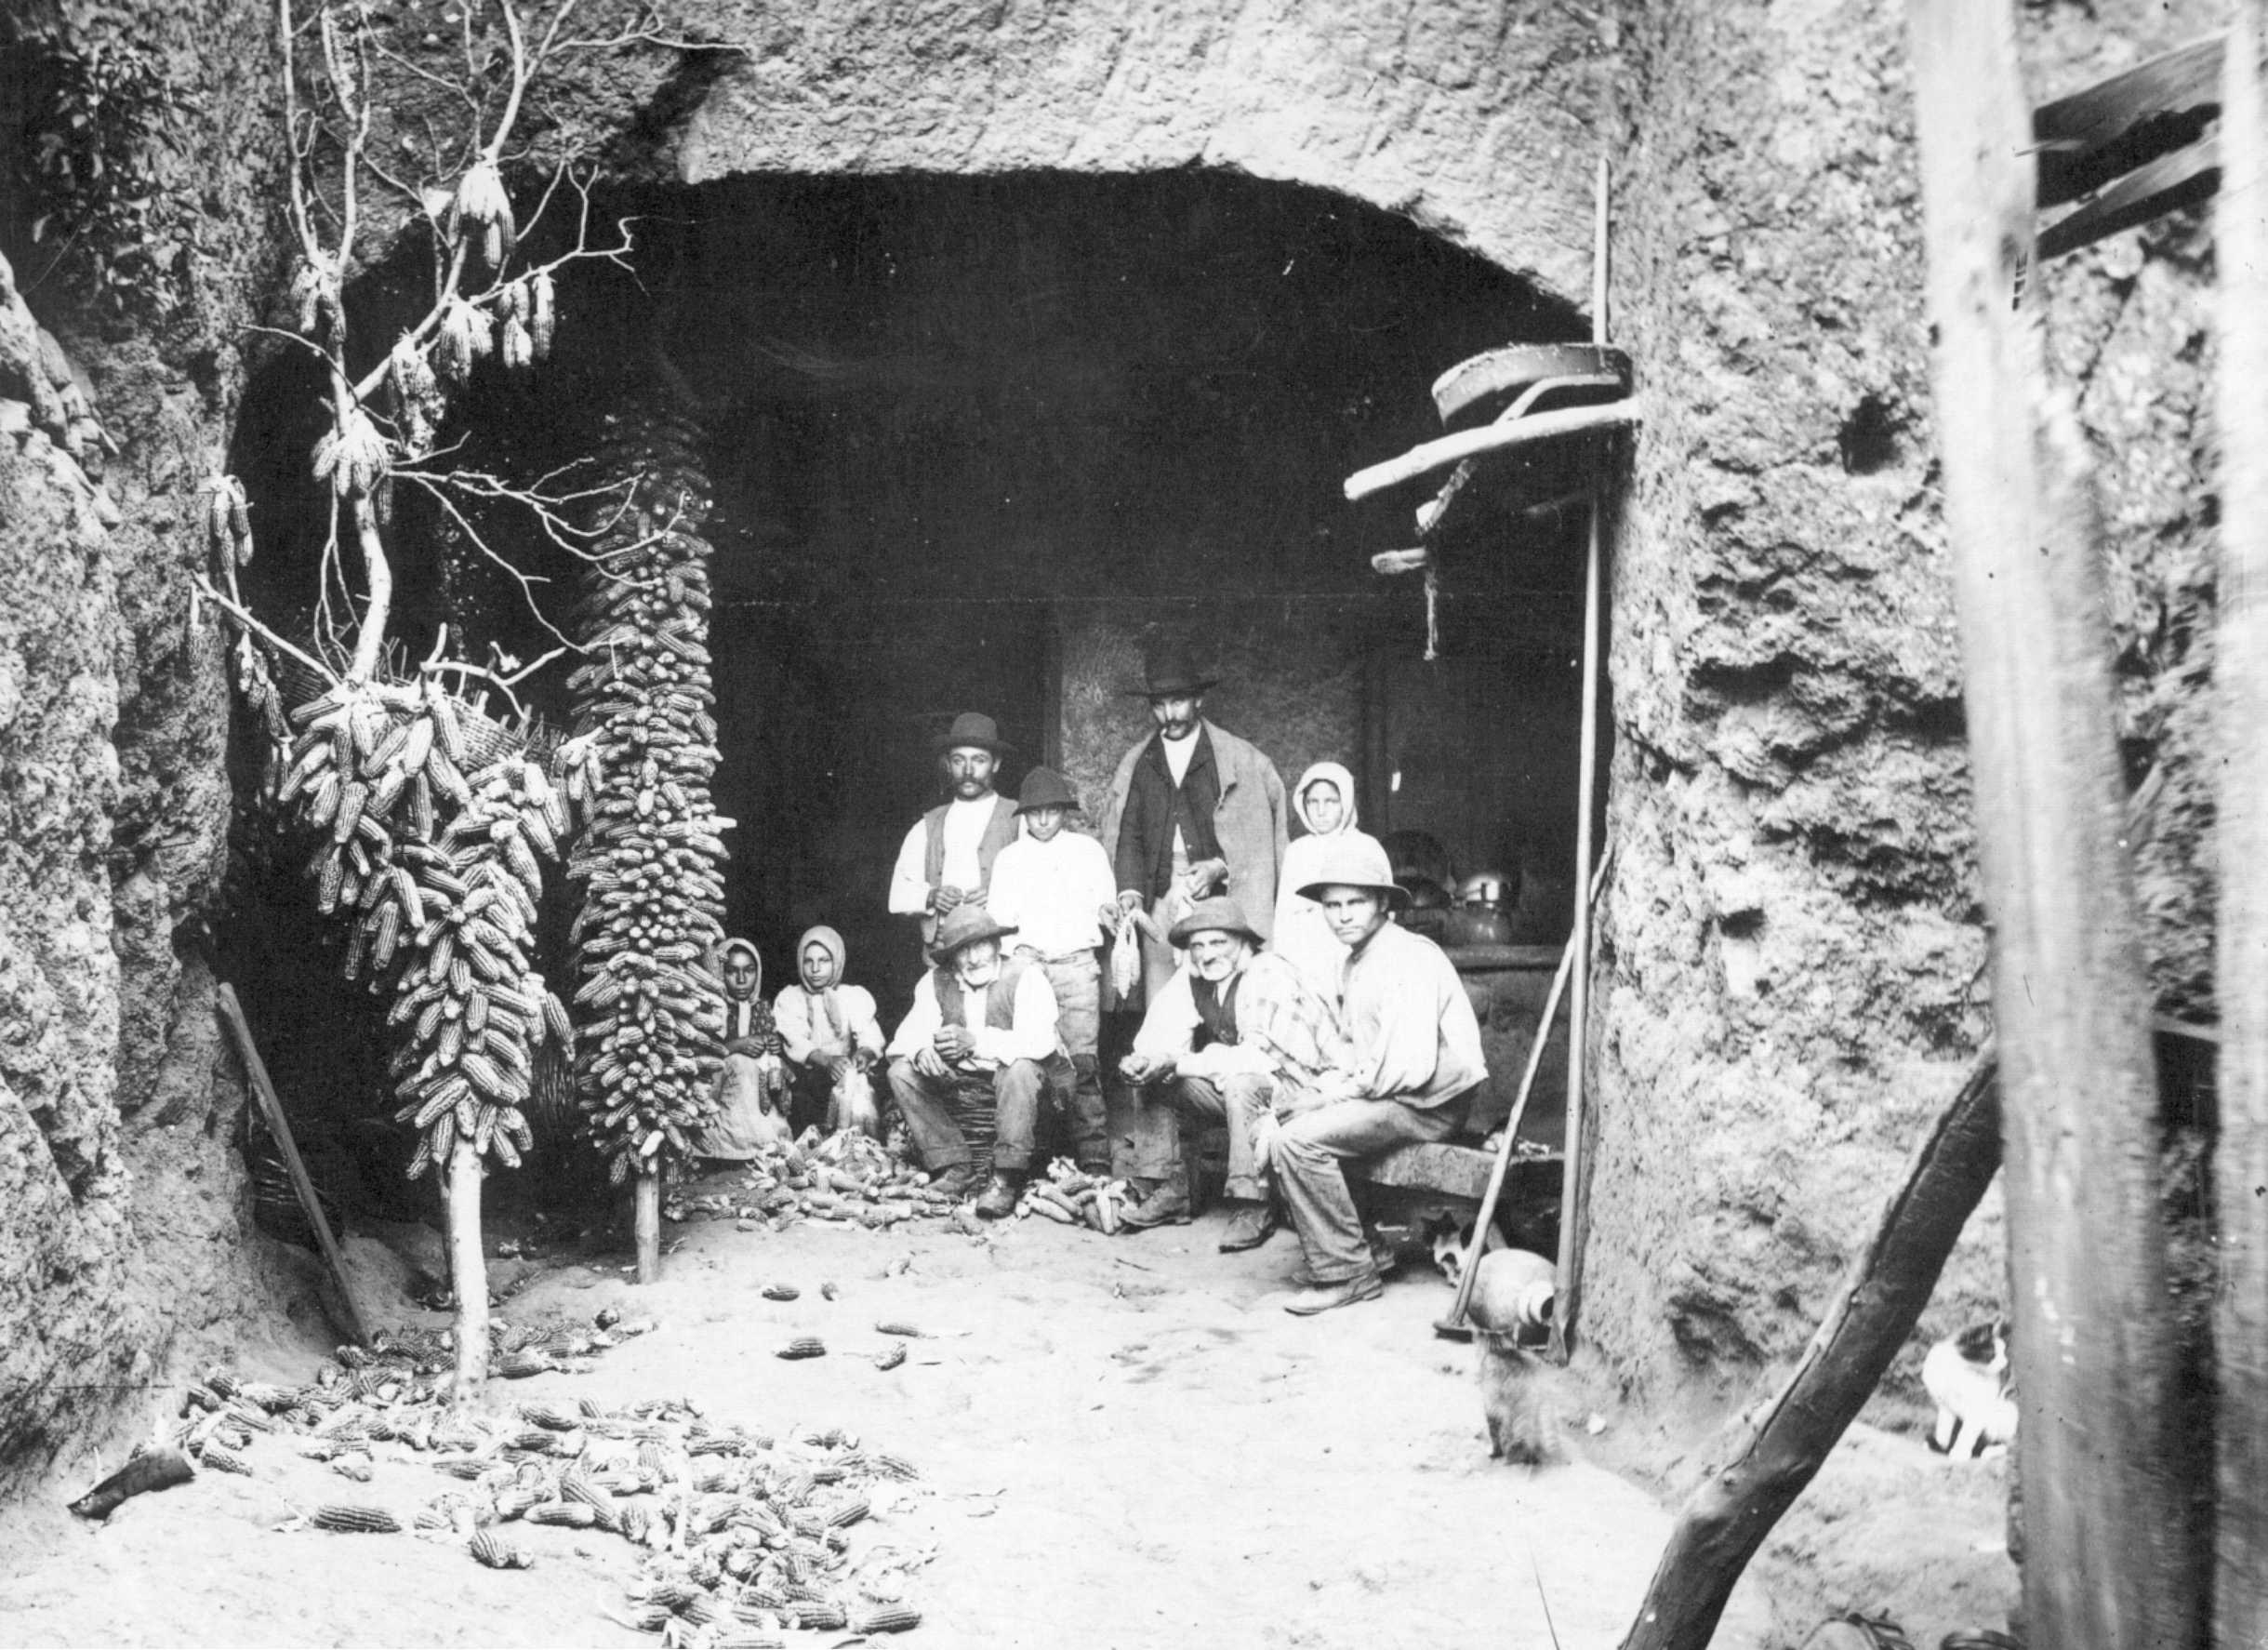 Familia campesina de los altos de Gáldar, desgranando millo.
Escena captada por Teodoro Maisch en 1925.